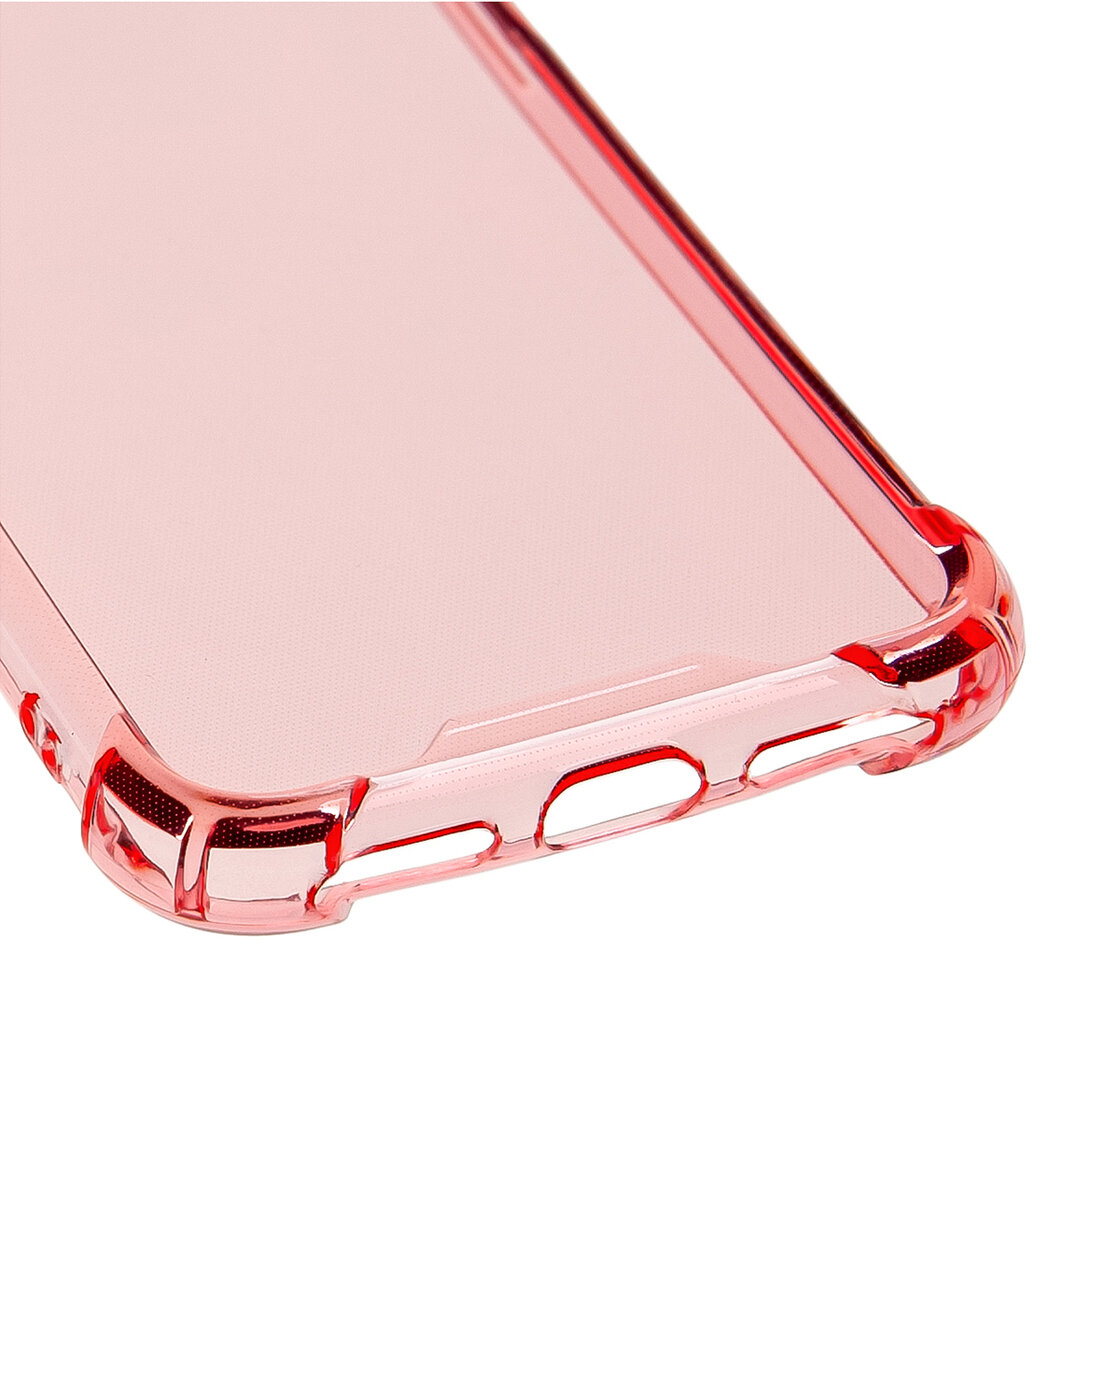 Чехол силиконовый на телефон Apple iPhone SE 2020 7, SE 2020 8 прозрачный противоударный, бампер с усиленными углами для смартфона Айфон СЕ 7, СЕ 8, розовый